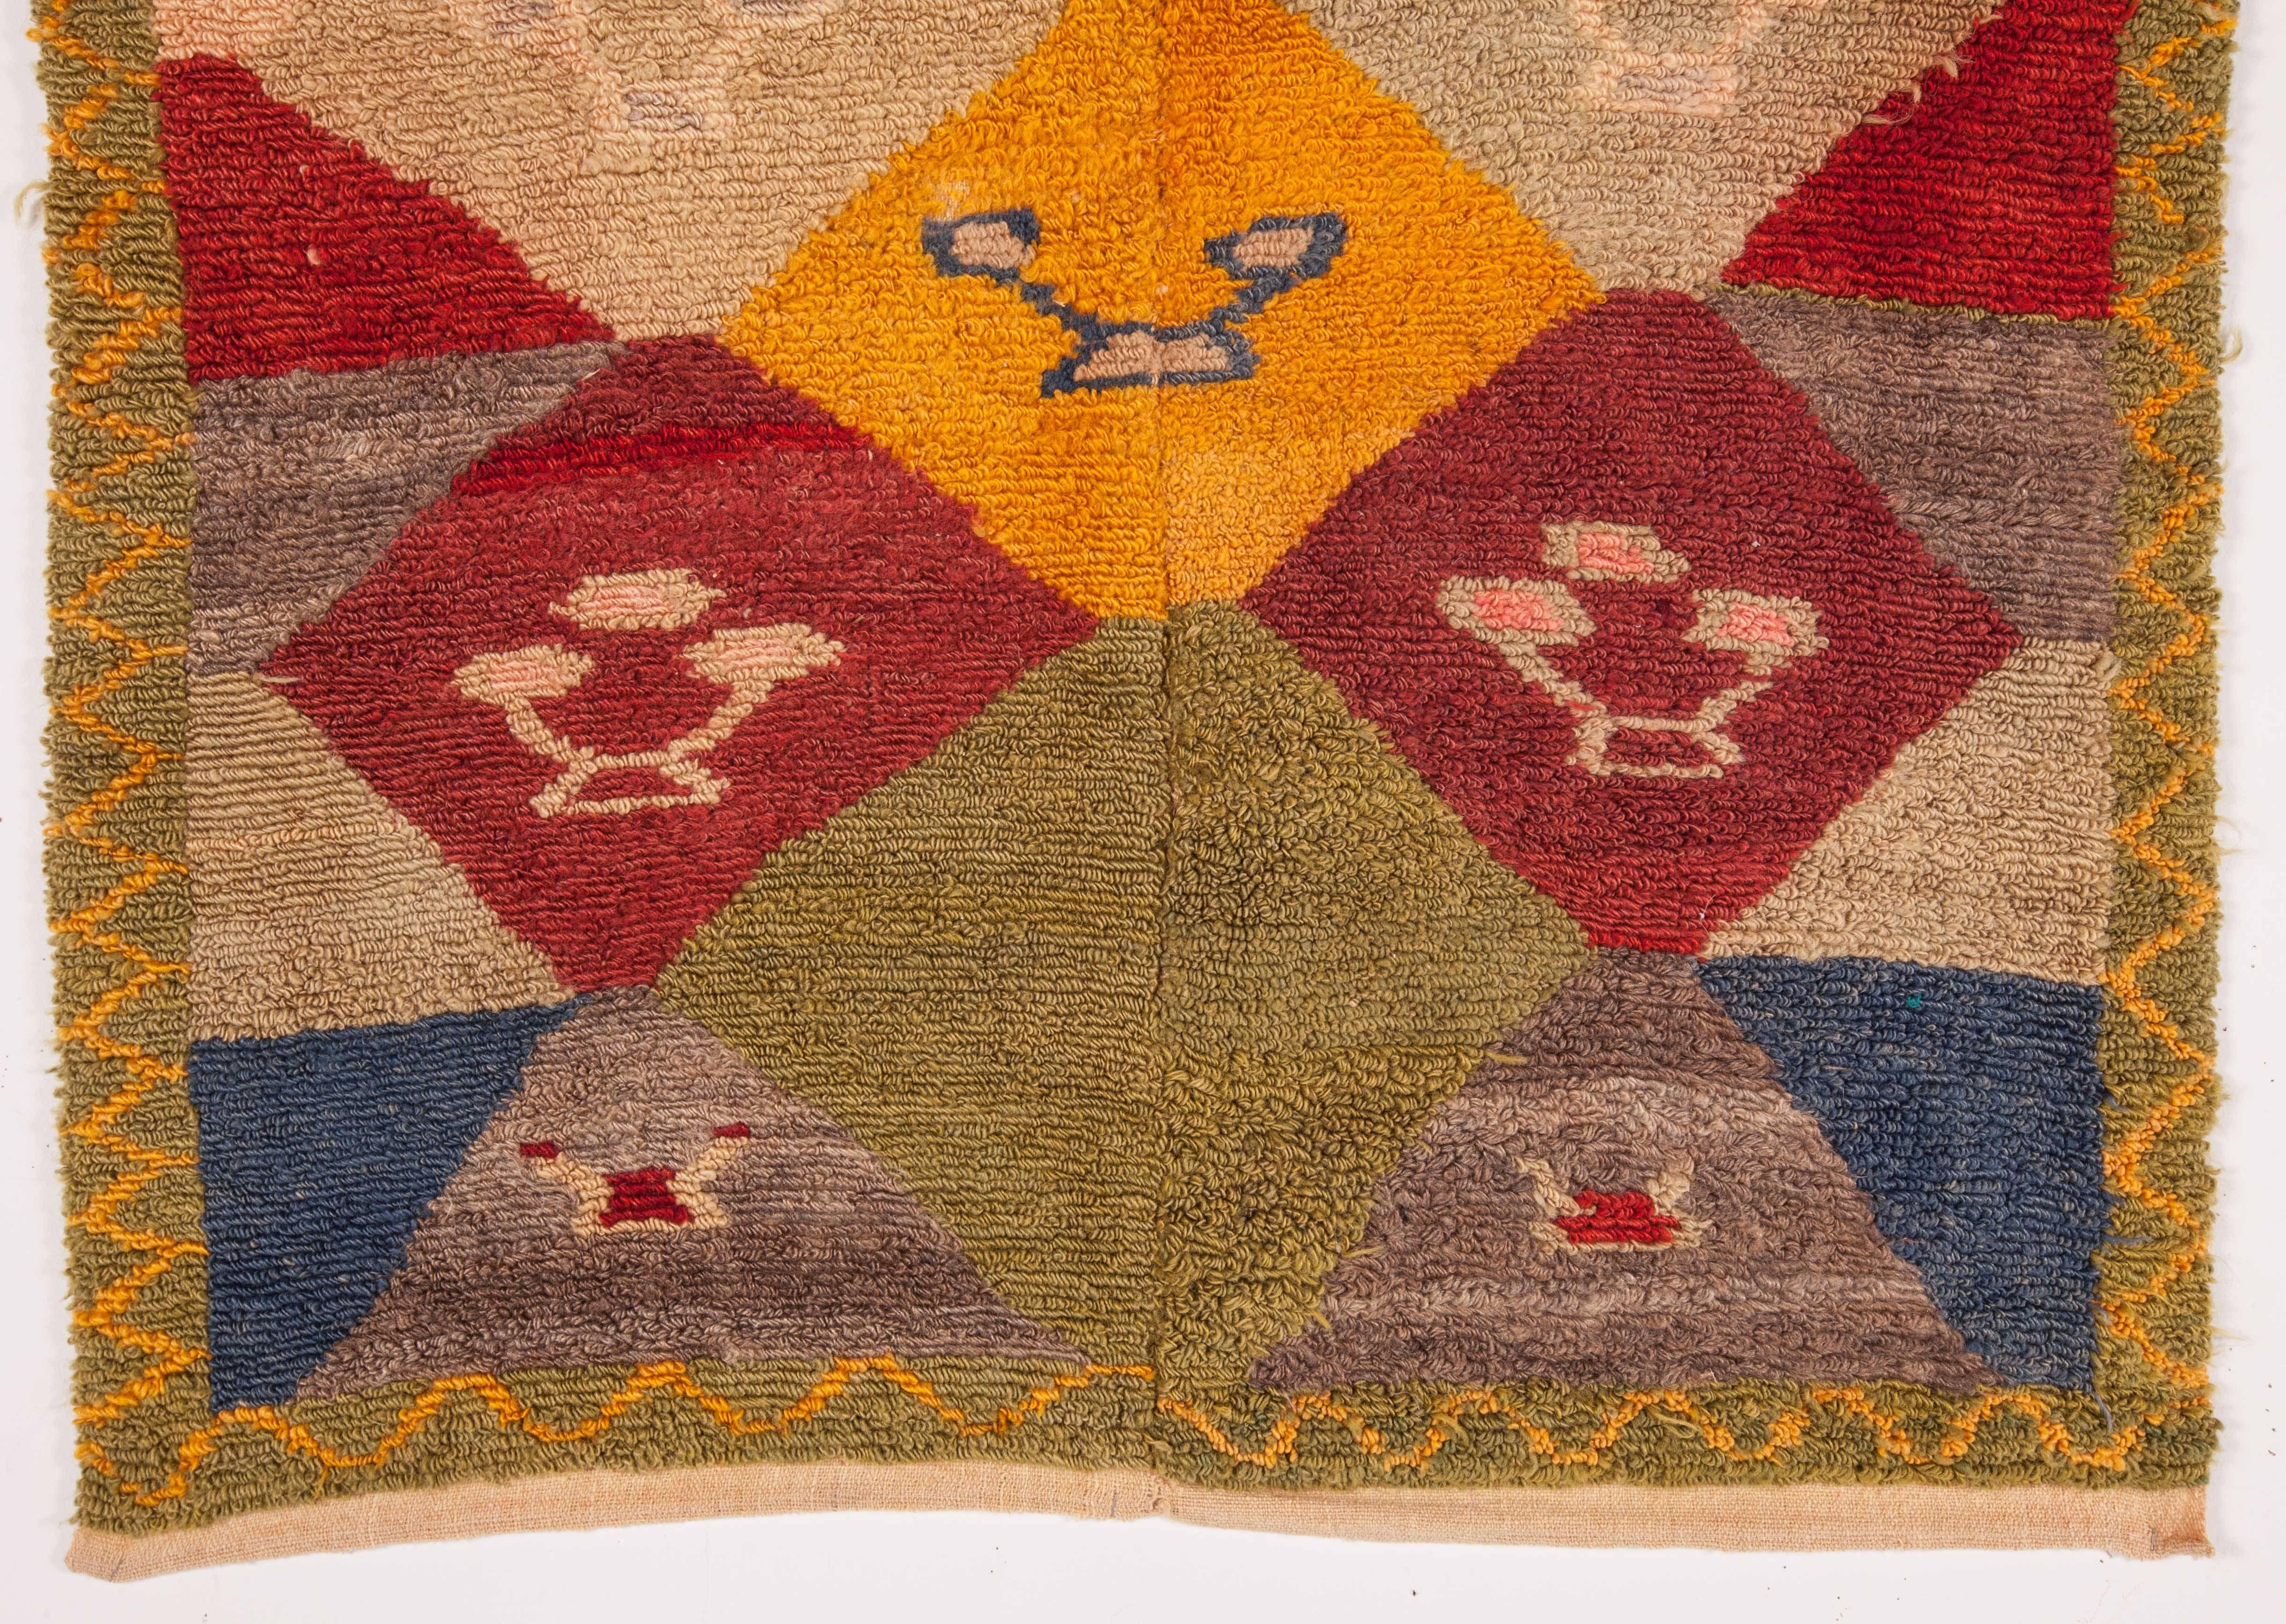 A colorful vintage Tulu rug.